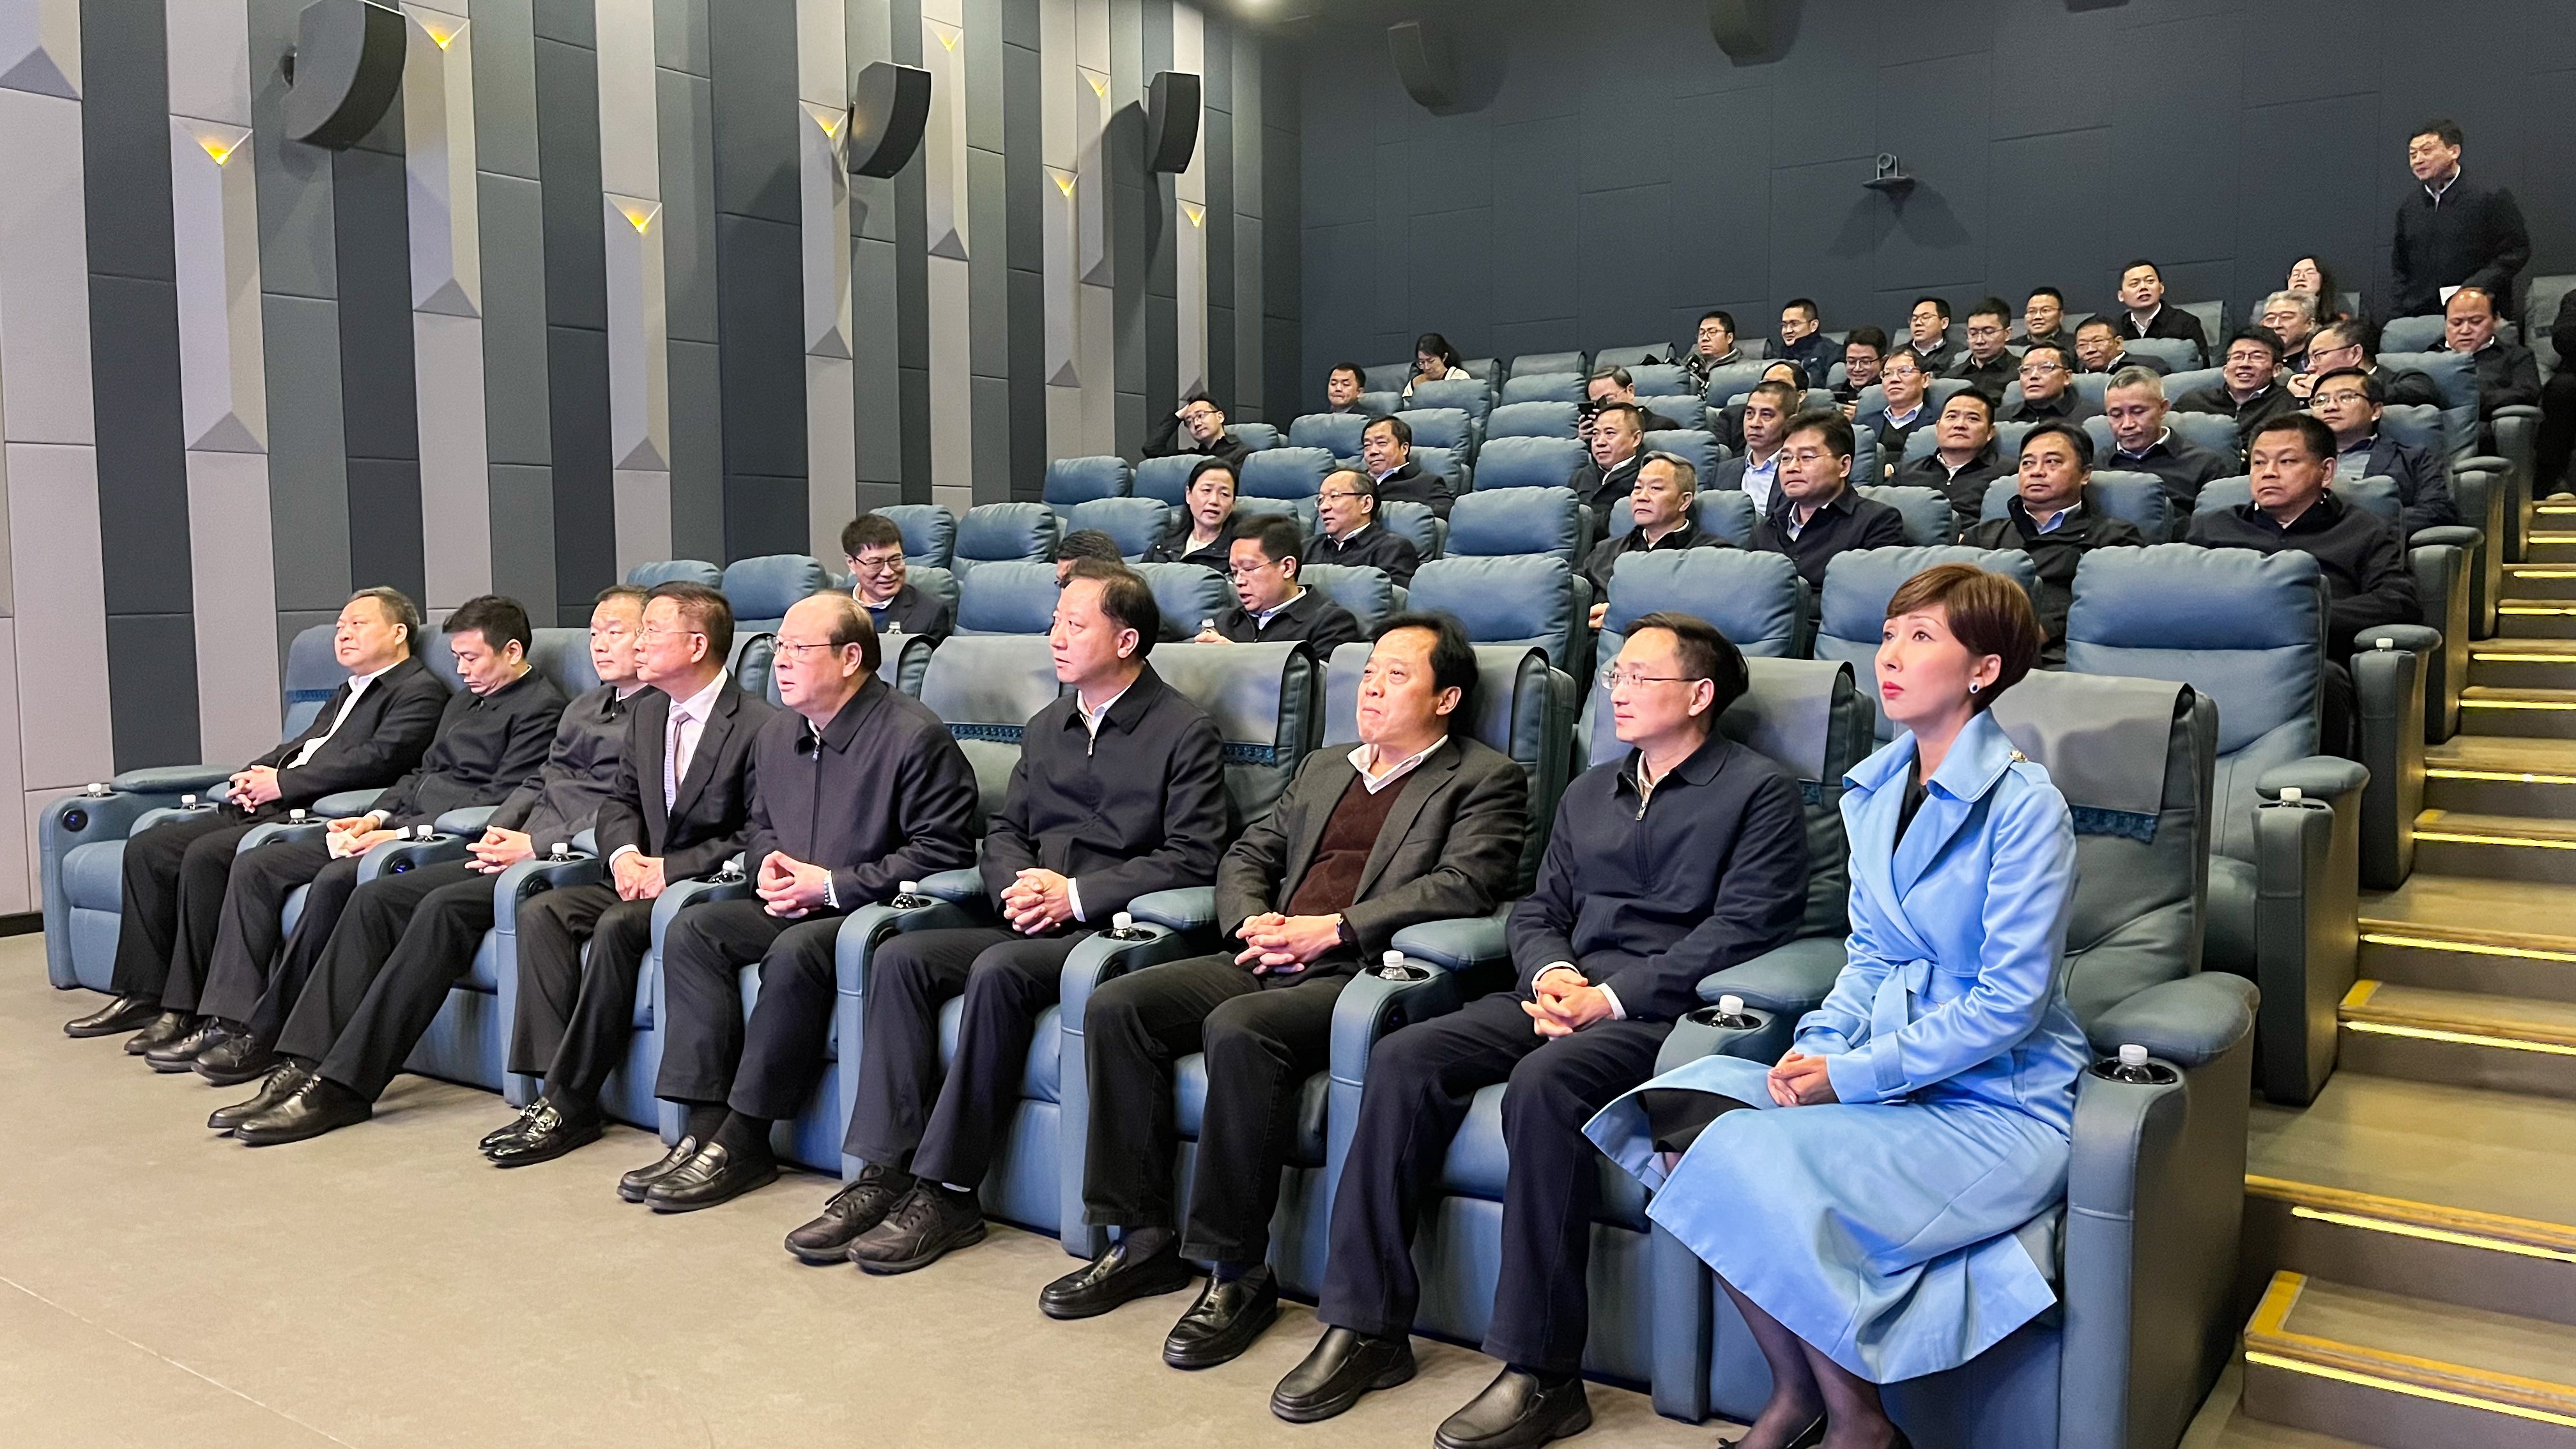 熱點新聞 | 寧波、蚌埠兩市黨政領導一行赴南宫NG·28集團考察調研